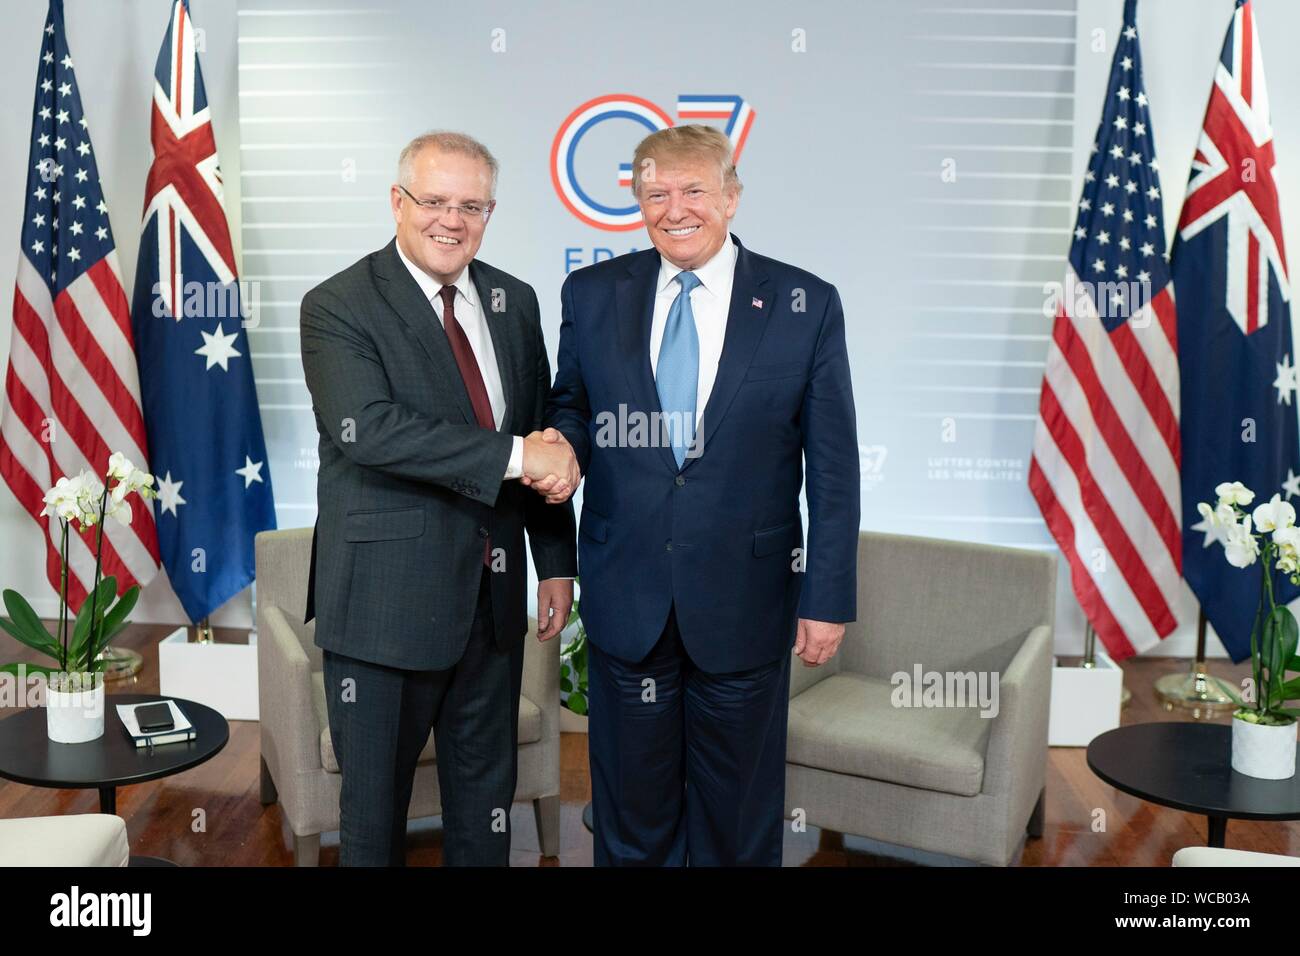 Le Président américain Donald Trump, serre la main avec le Premier Ministre australien, Scott Morrison, gauche, avant leur réunion bilatérale en marge du Sommet du G7 au centre de congrès Bellevue 25 août 2019 à Biarritz, France. Banque D'Images